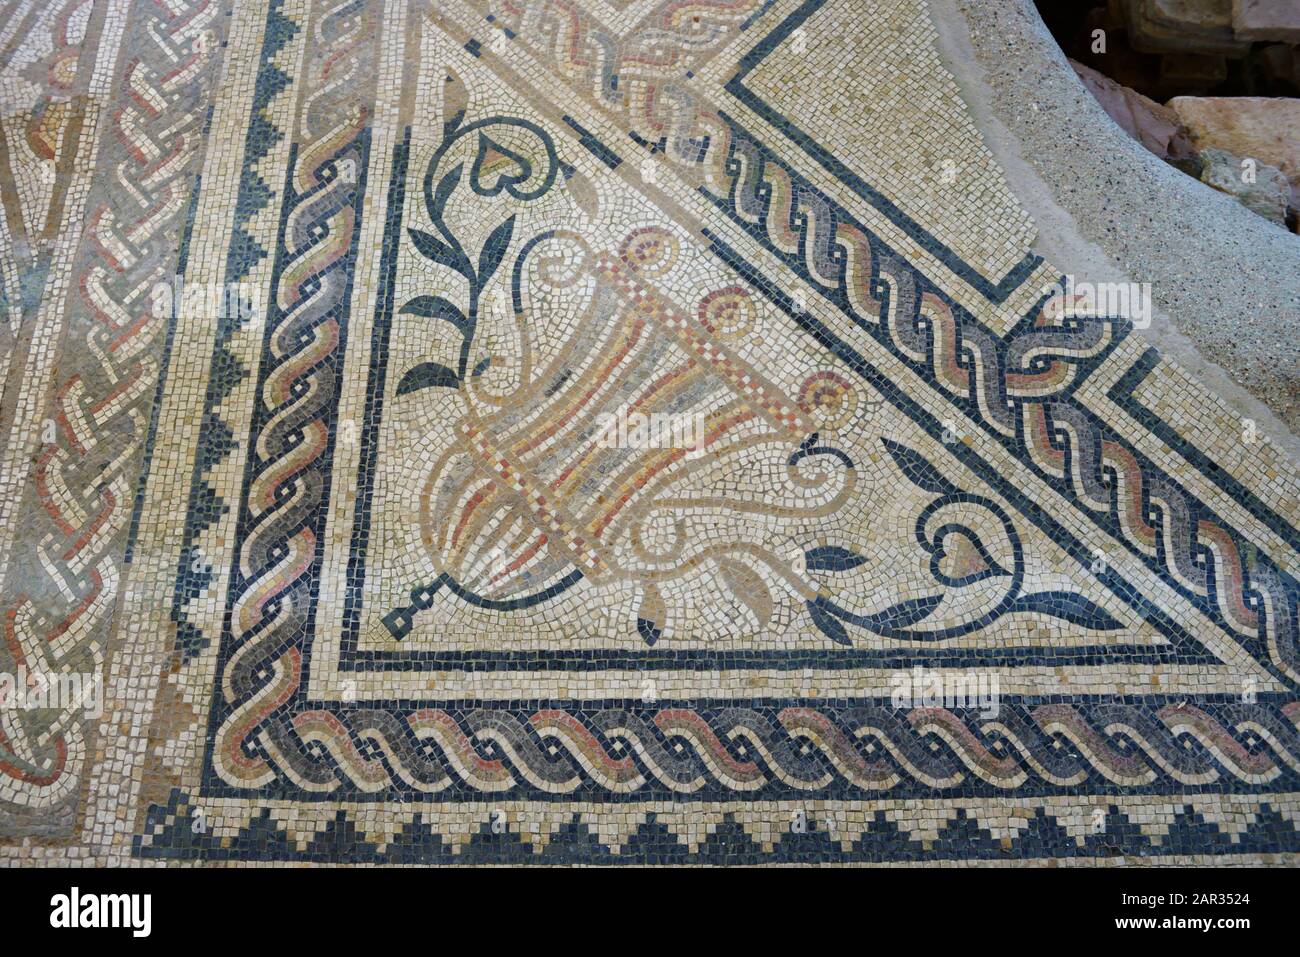 Un coin d'un sol en mosaïque romaine à Bignor Roman Villa, West Sussex, Angleterre, Royaume-Uni. Banque D'Images